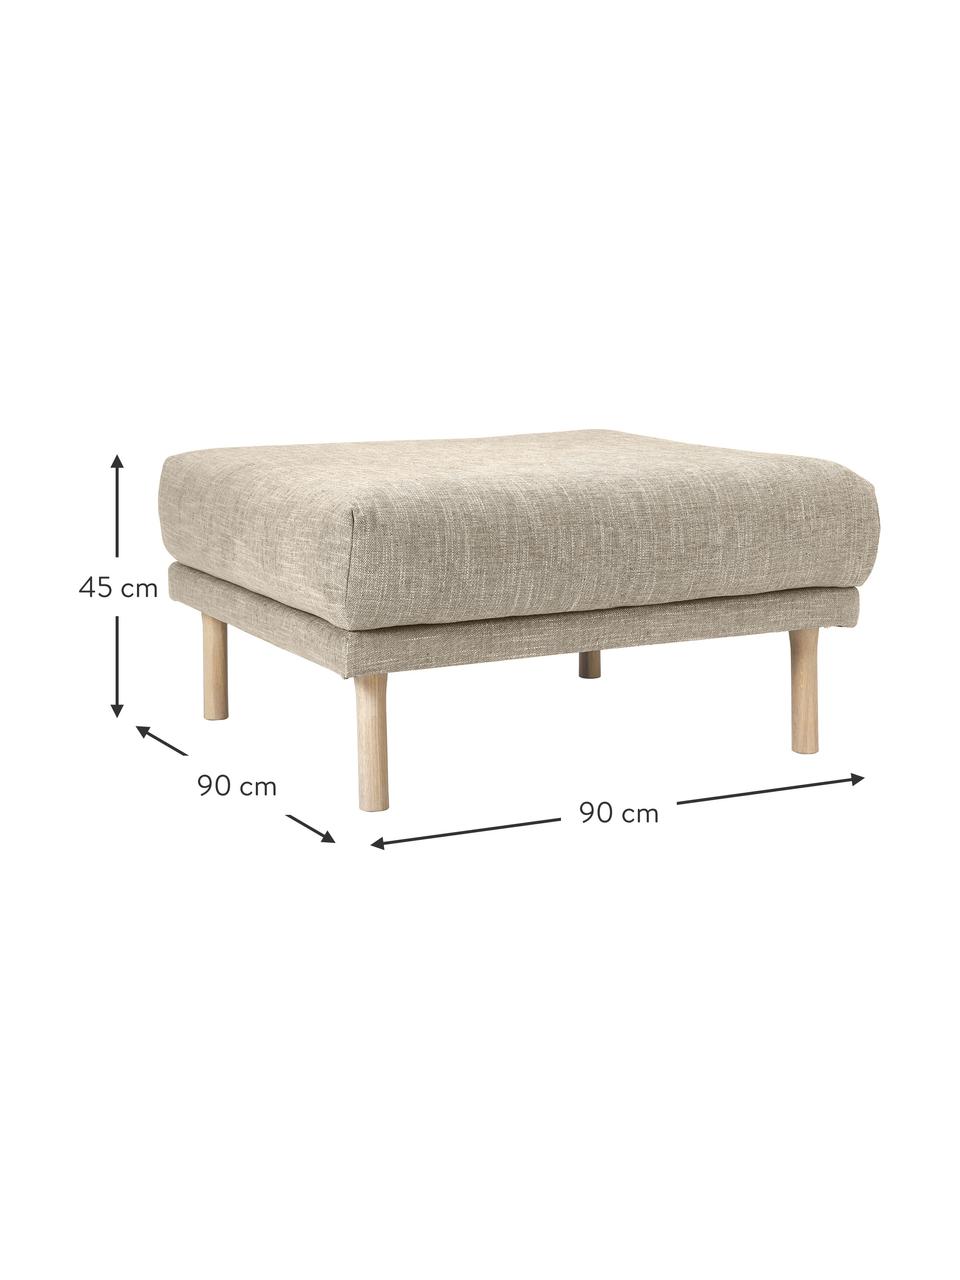 Poggiapiedi divano Adrian, Rivestimento: 47% viscosa, 23% cotone, , Struttura: compensato, Piedini: legno di quercia oliato, Tessuto beige scuro, Larg. 90 x Alt. 45 cm